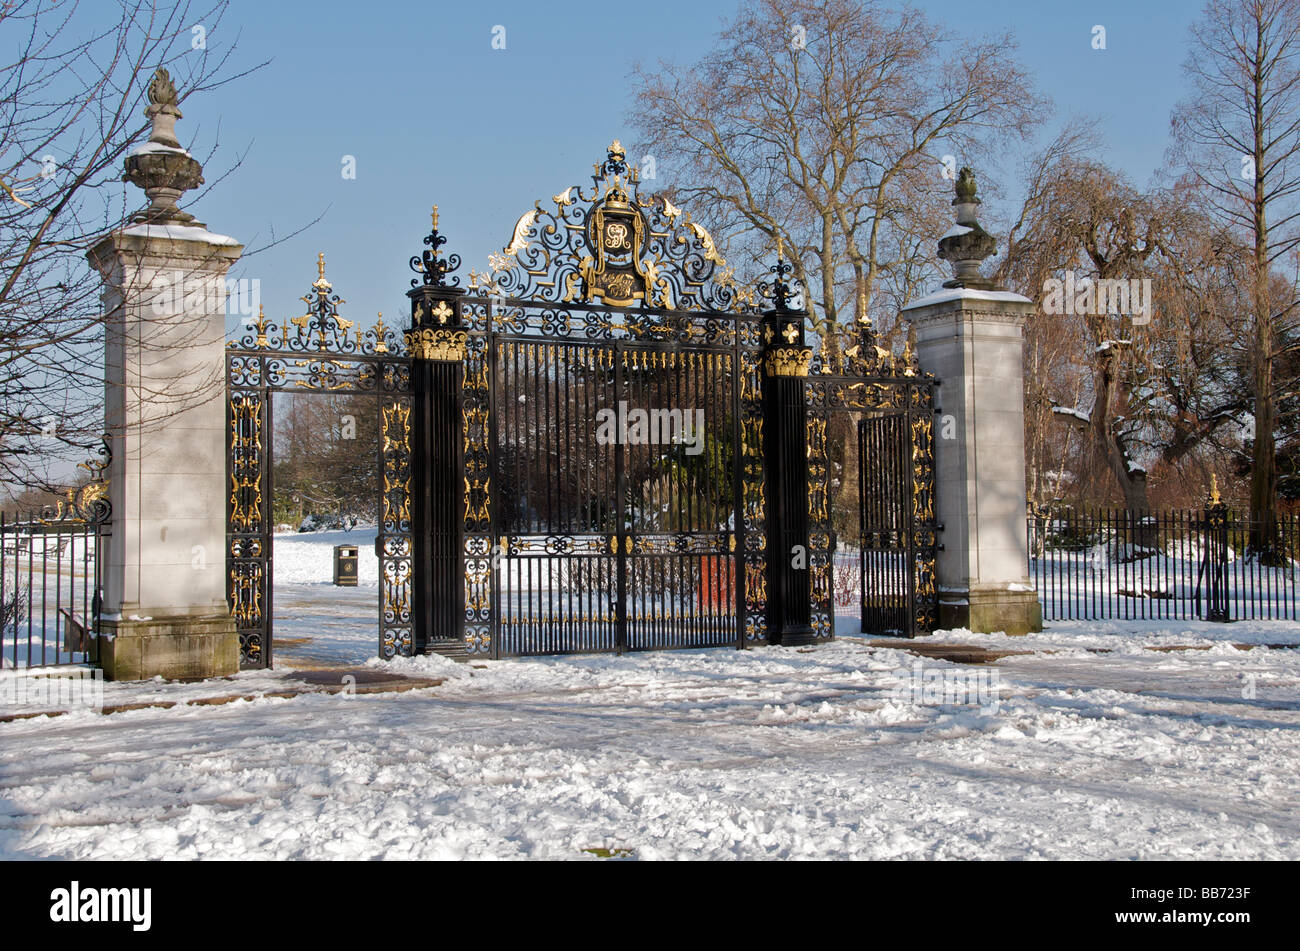 La porte du Jubilé en hiver entrée de Queen Mary's Garden Cercle Intérieur Regents Park Londres Angleterre Royaume-uni Banque D'Images